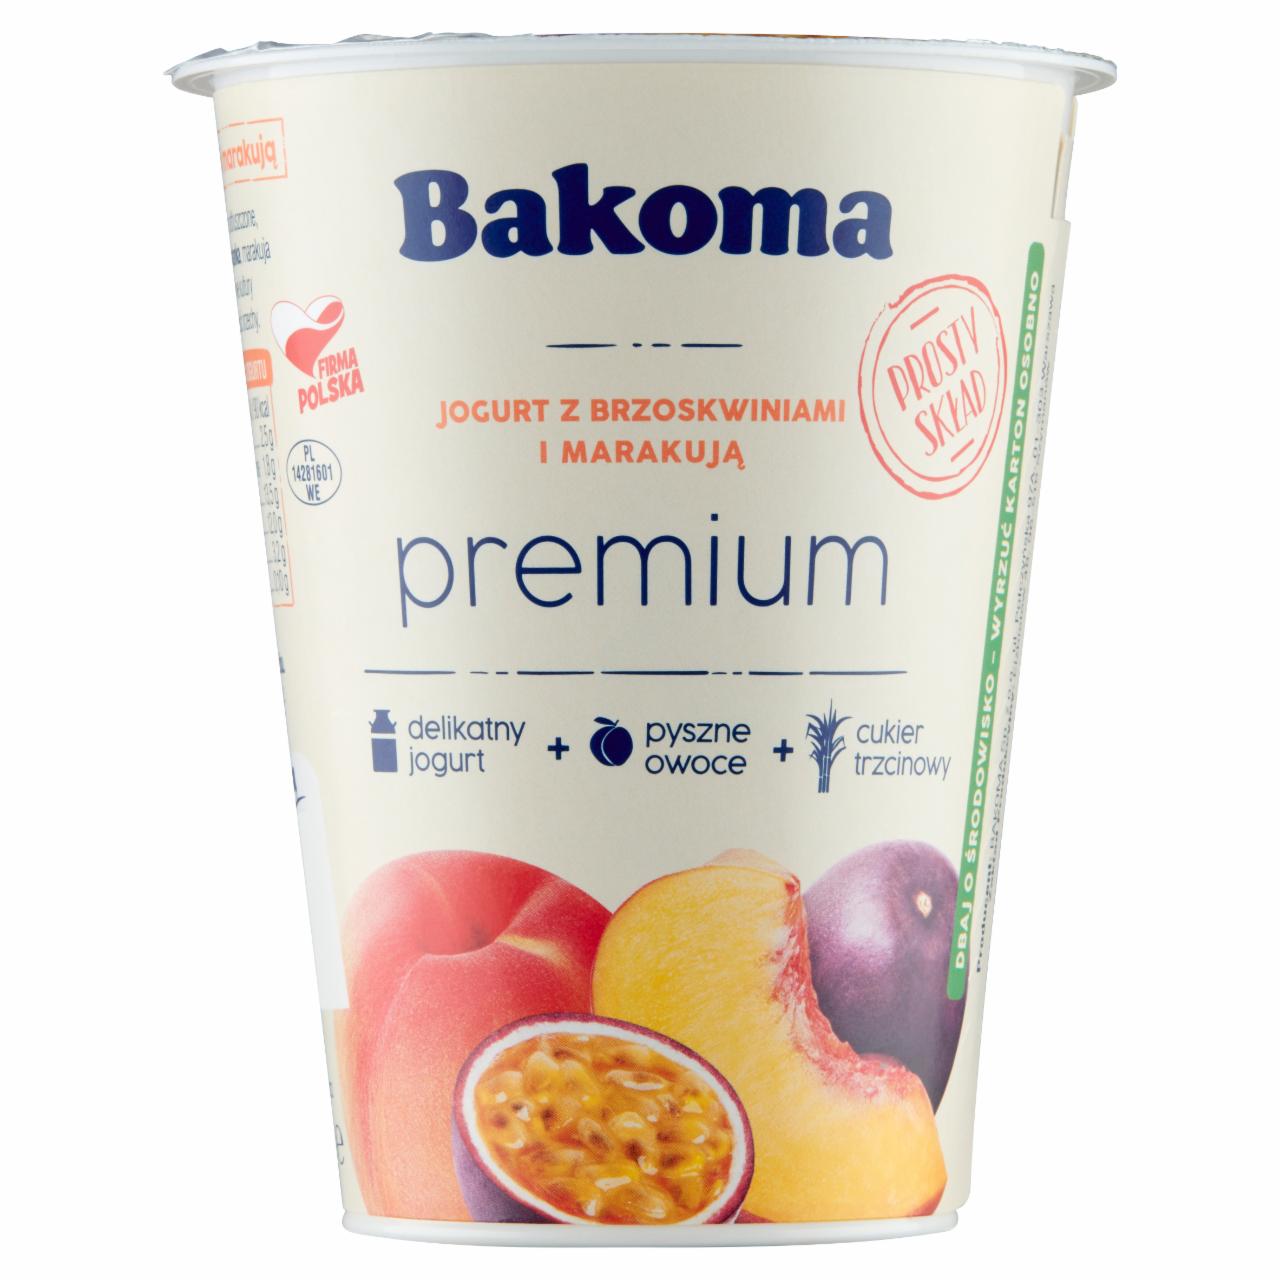 Zdjęcia - Bakoma Premium Jogurt z brzoskwiniami i marakują 400 g